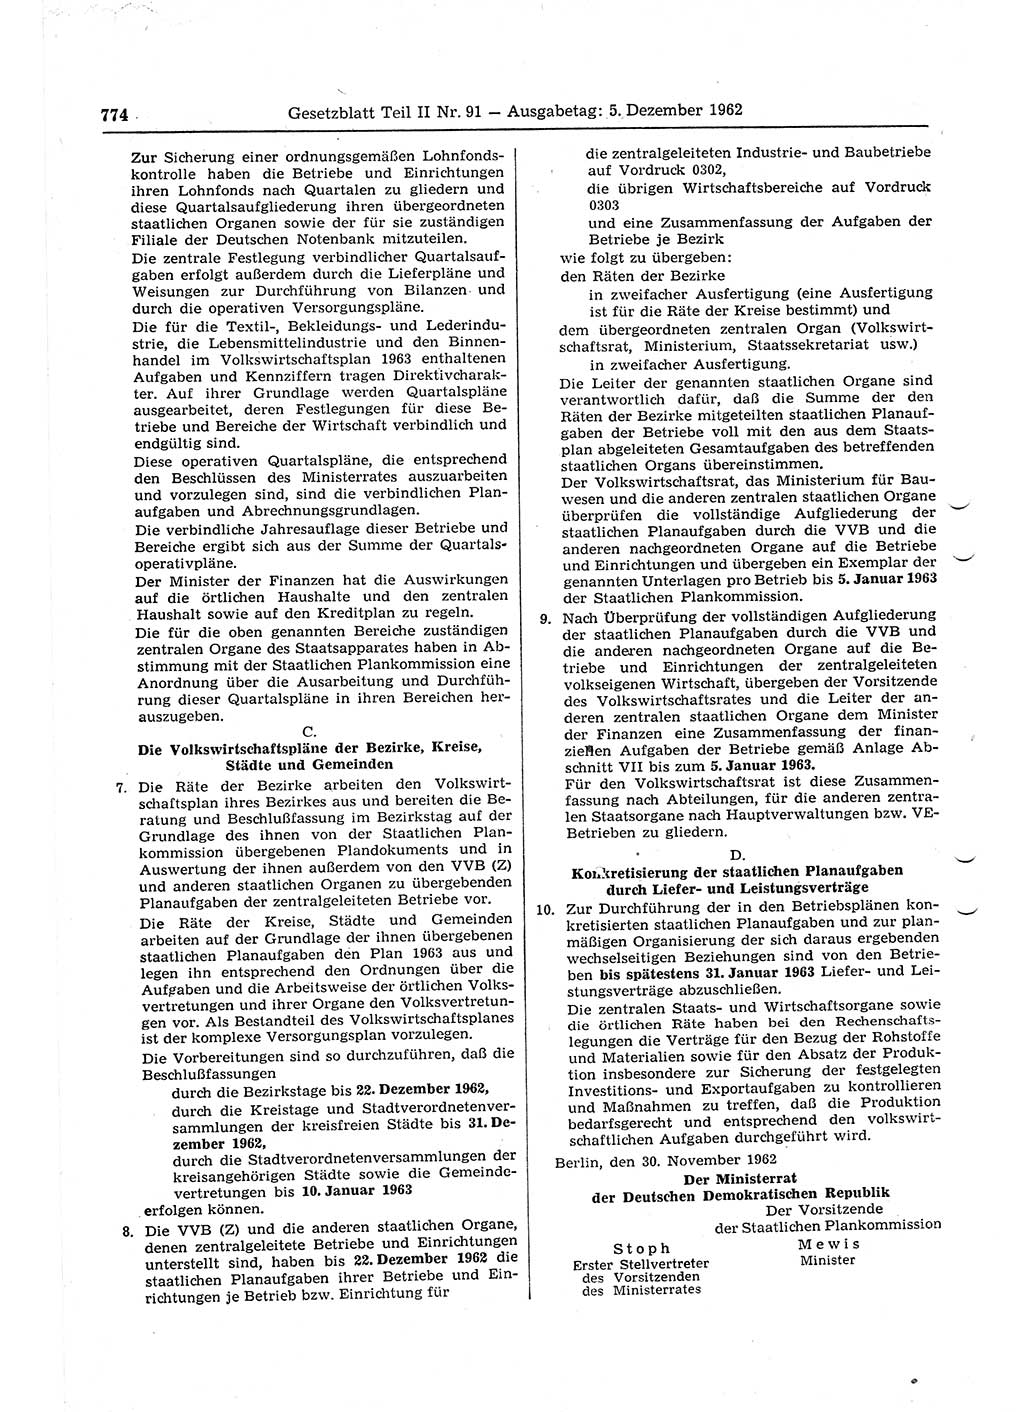 Gesetzblatt (GBl.) der Deutschen Demokratischen Republik (DDR) Teil ⅠⅠ 1962, Seite 774 (GBl. DDR ⅠⅠ 1962, S. 774)